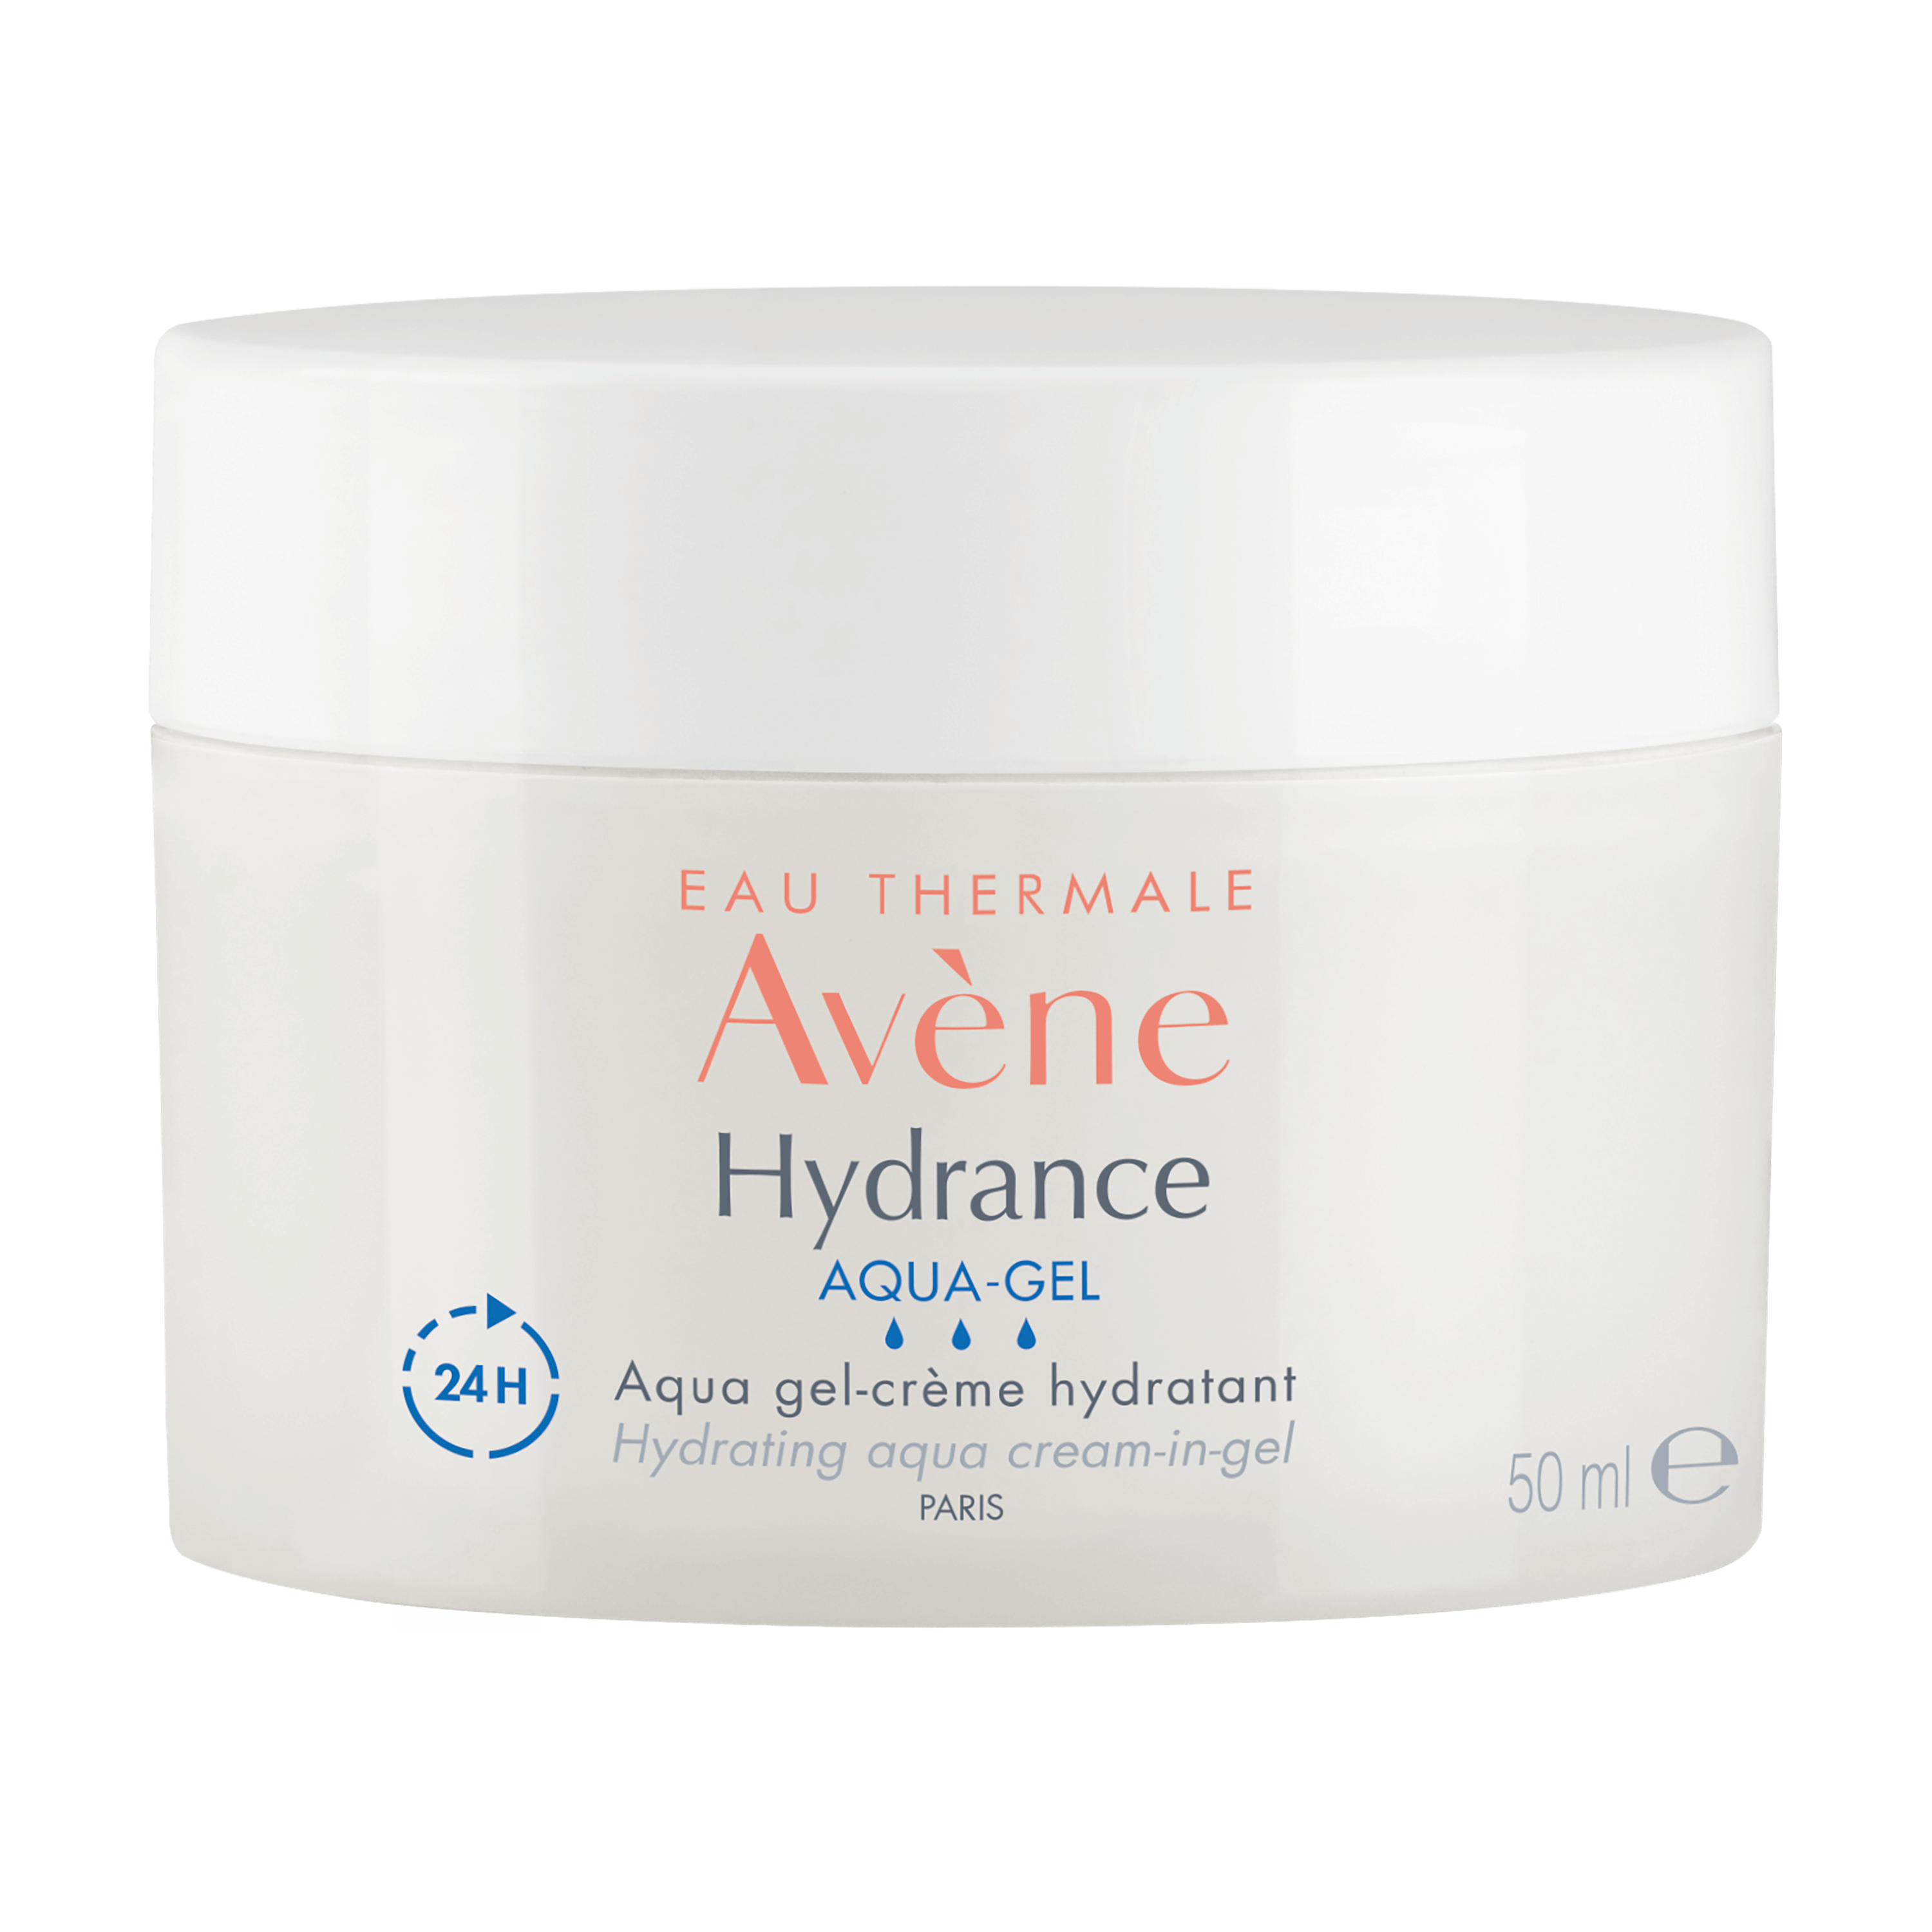 Hydrance AQUA-GEL Aqua Cream-in-Gel